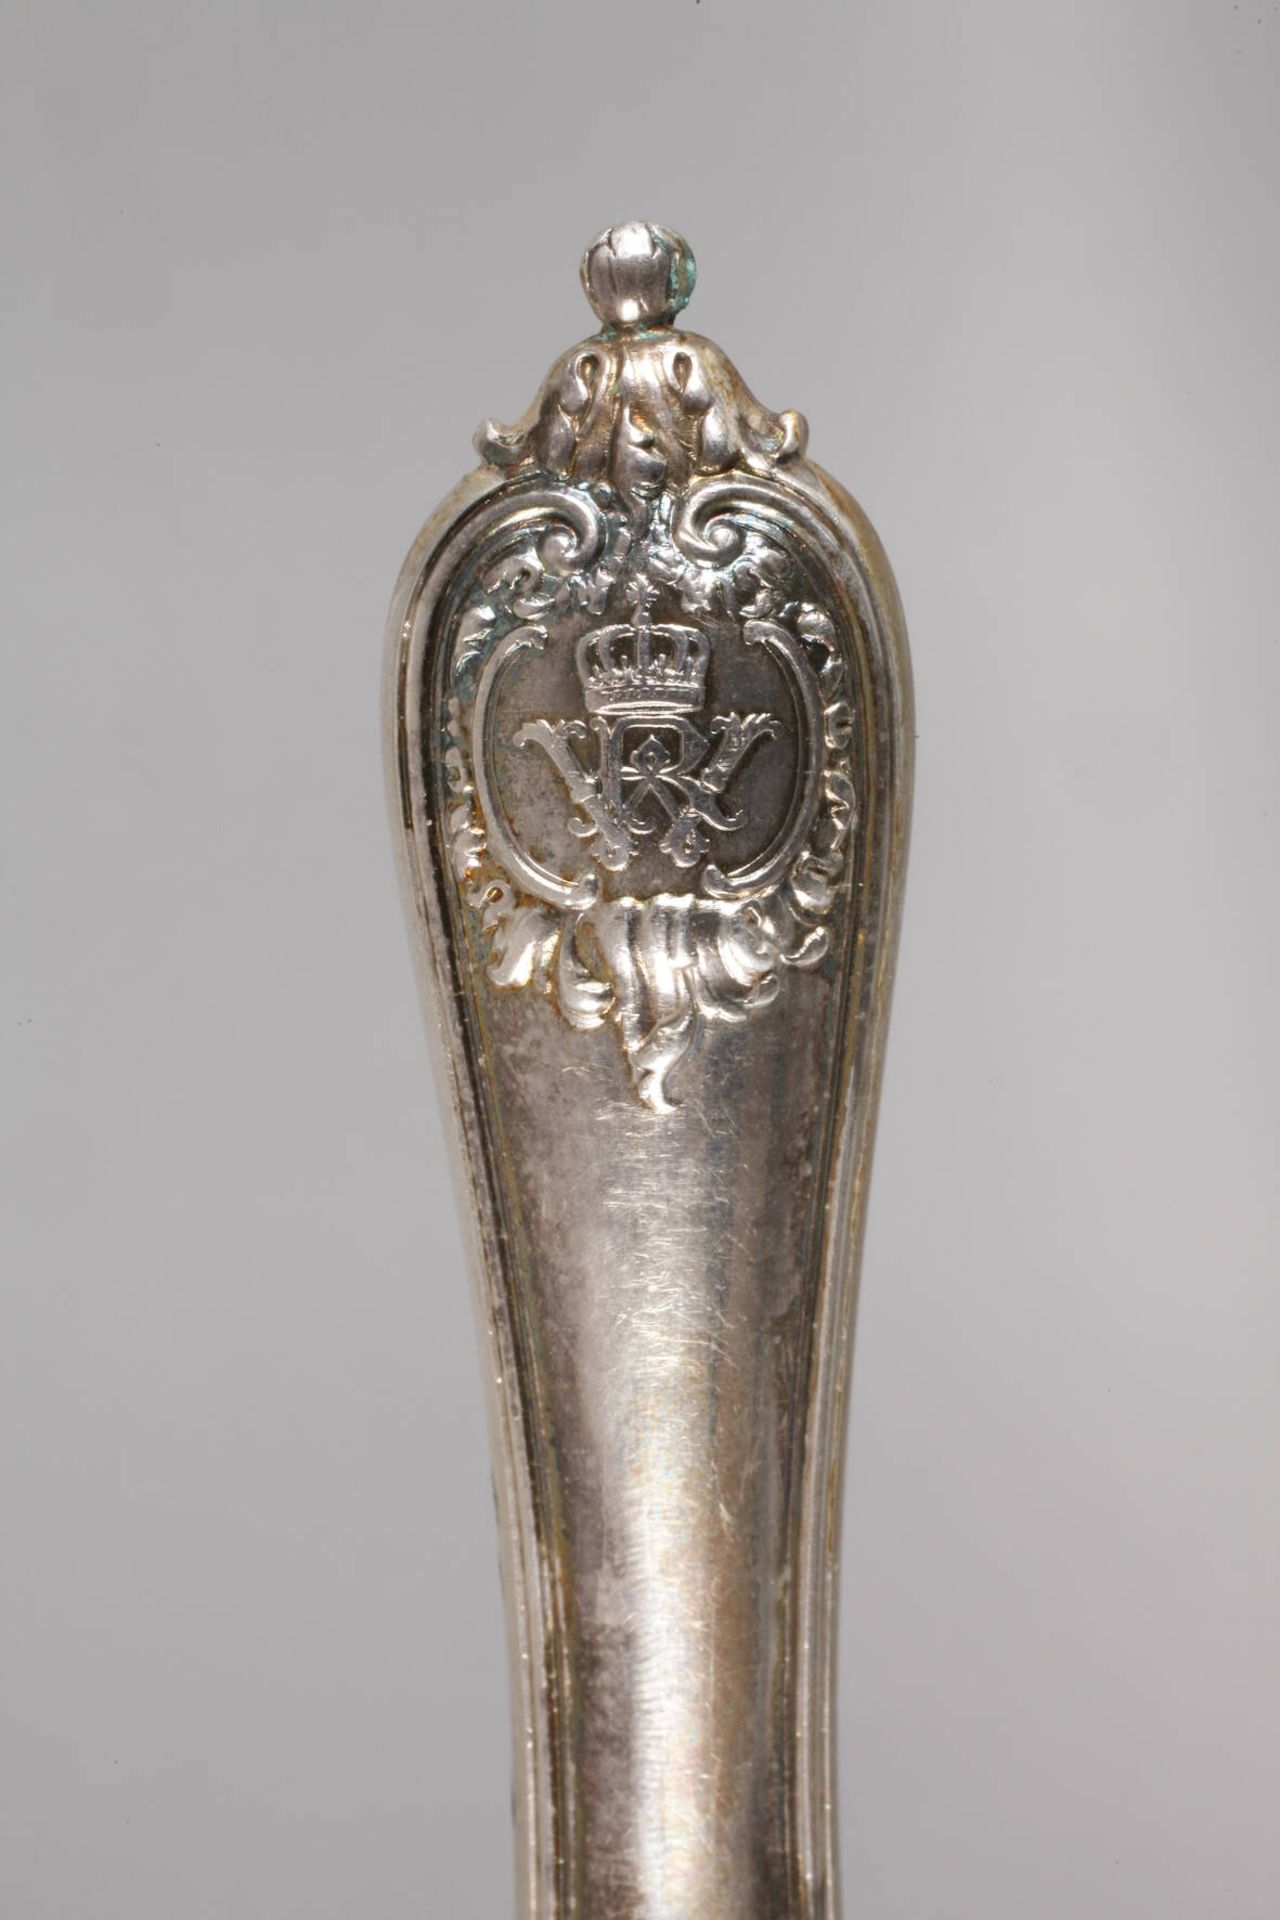 Silber Tortenheber aus dem Besitz Kaiser Wilhelm II. von Preußendatiert 1900, Silberstempel - Image 3 of 6